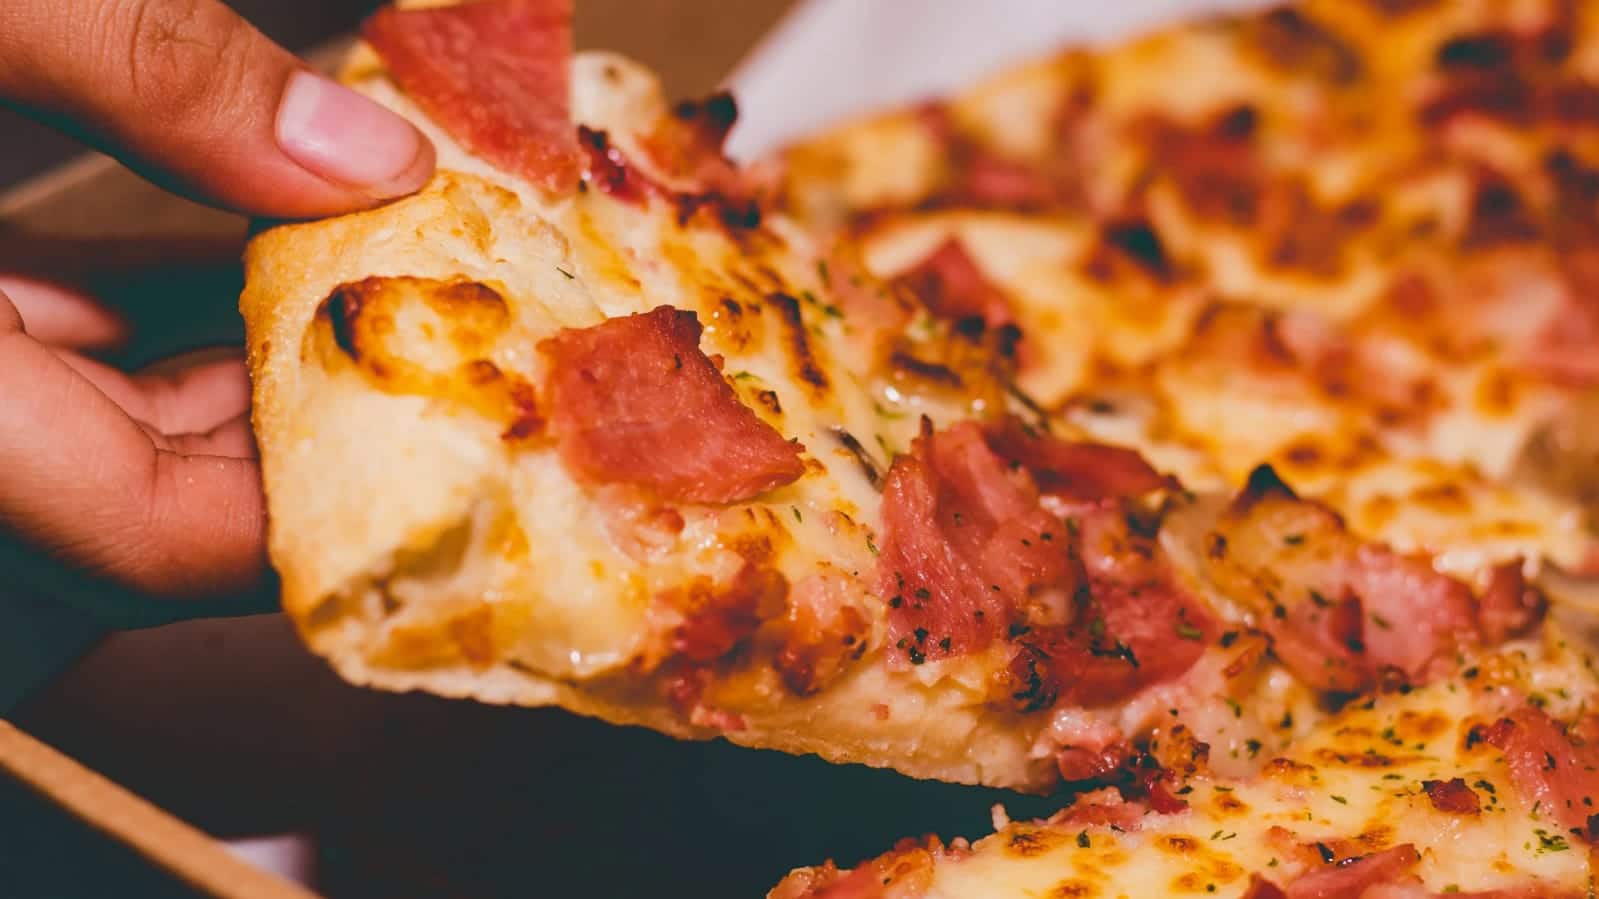 Día Mundial de la Pizza